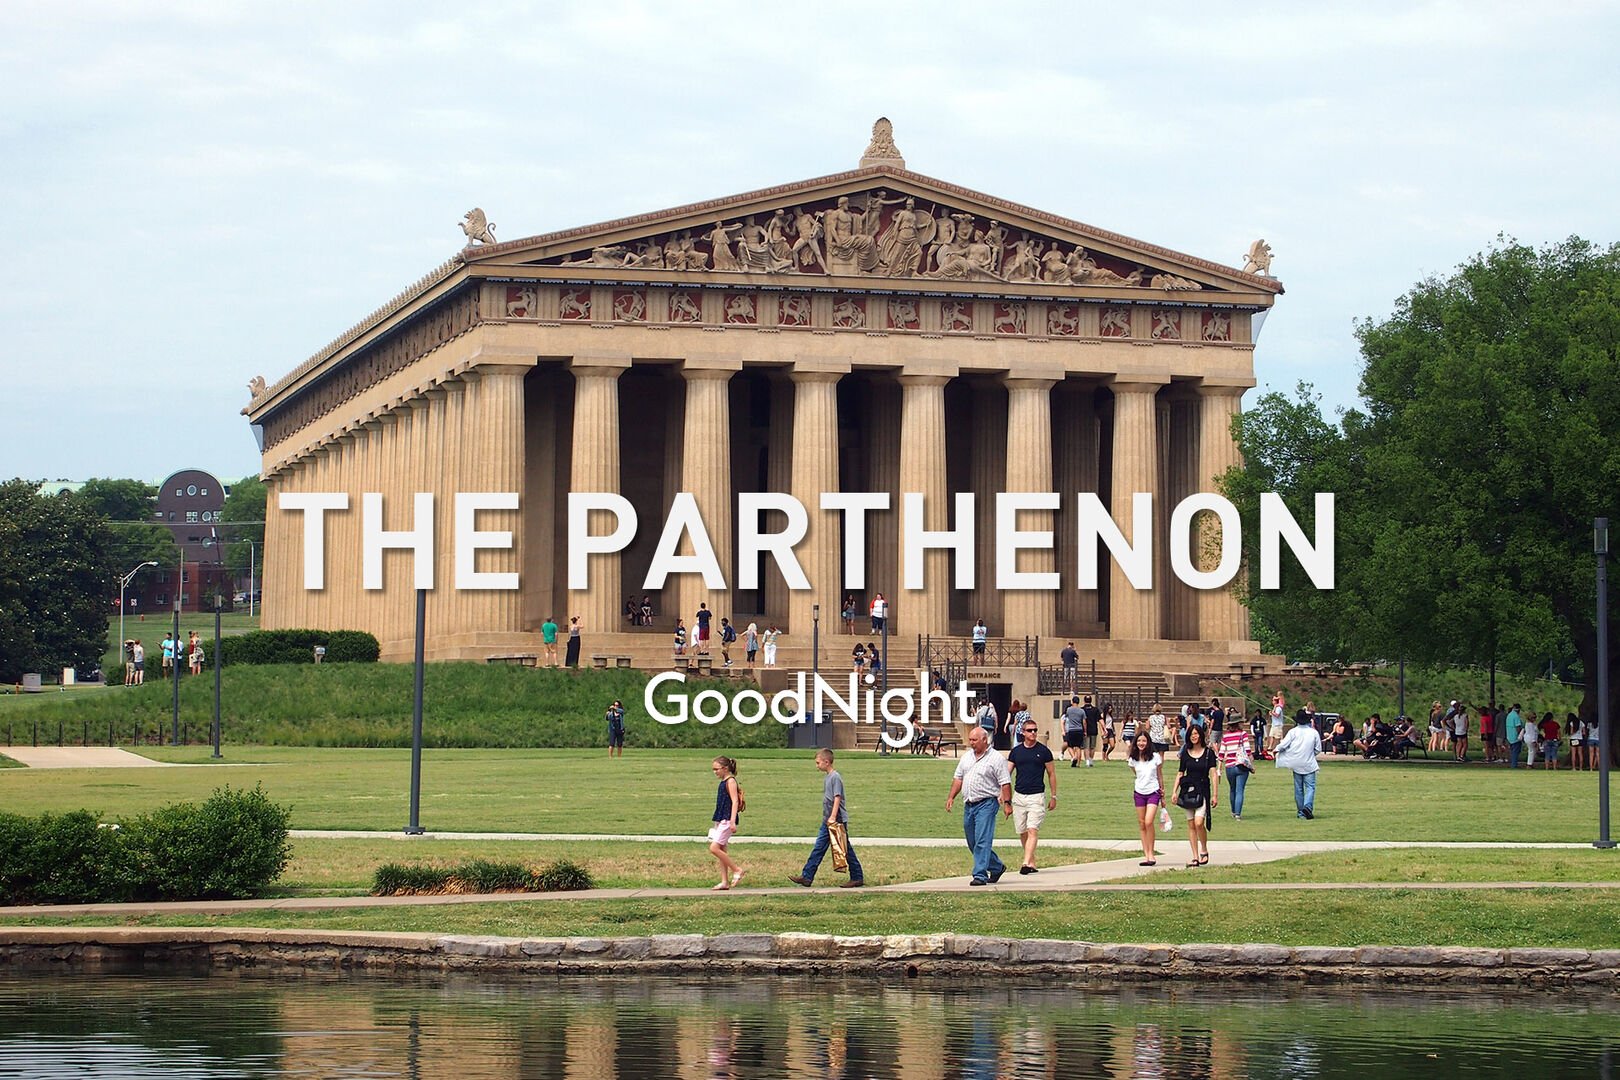 13 mins: The Parthenon